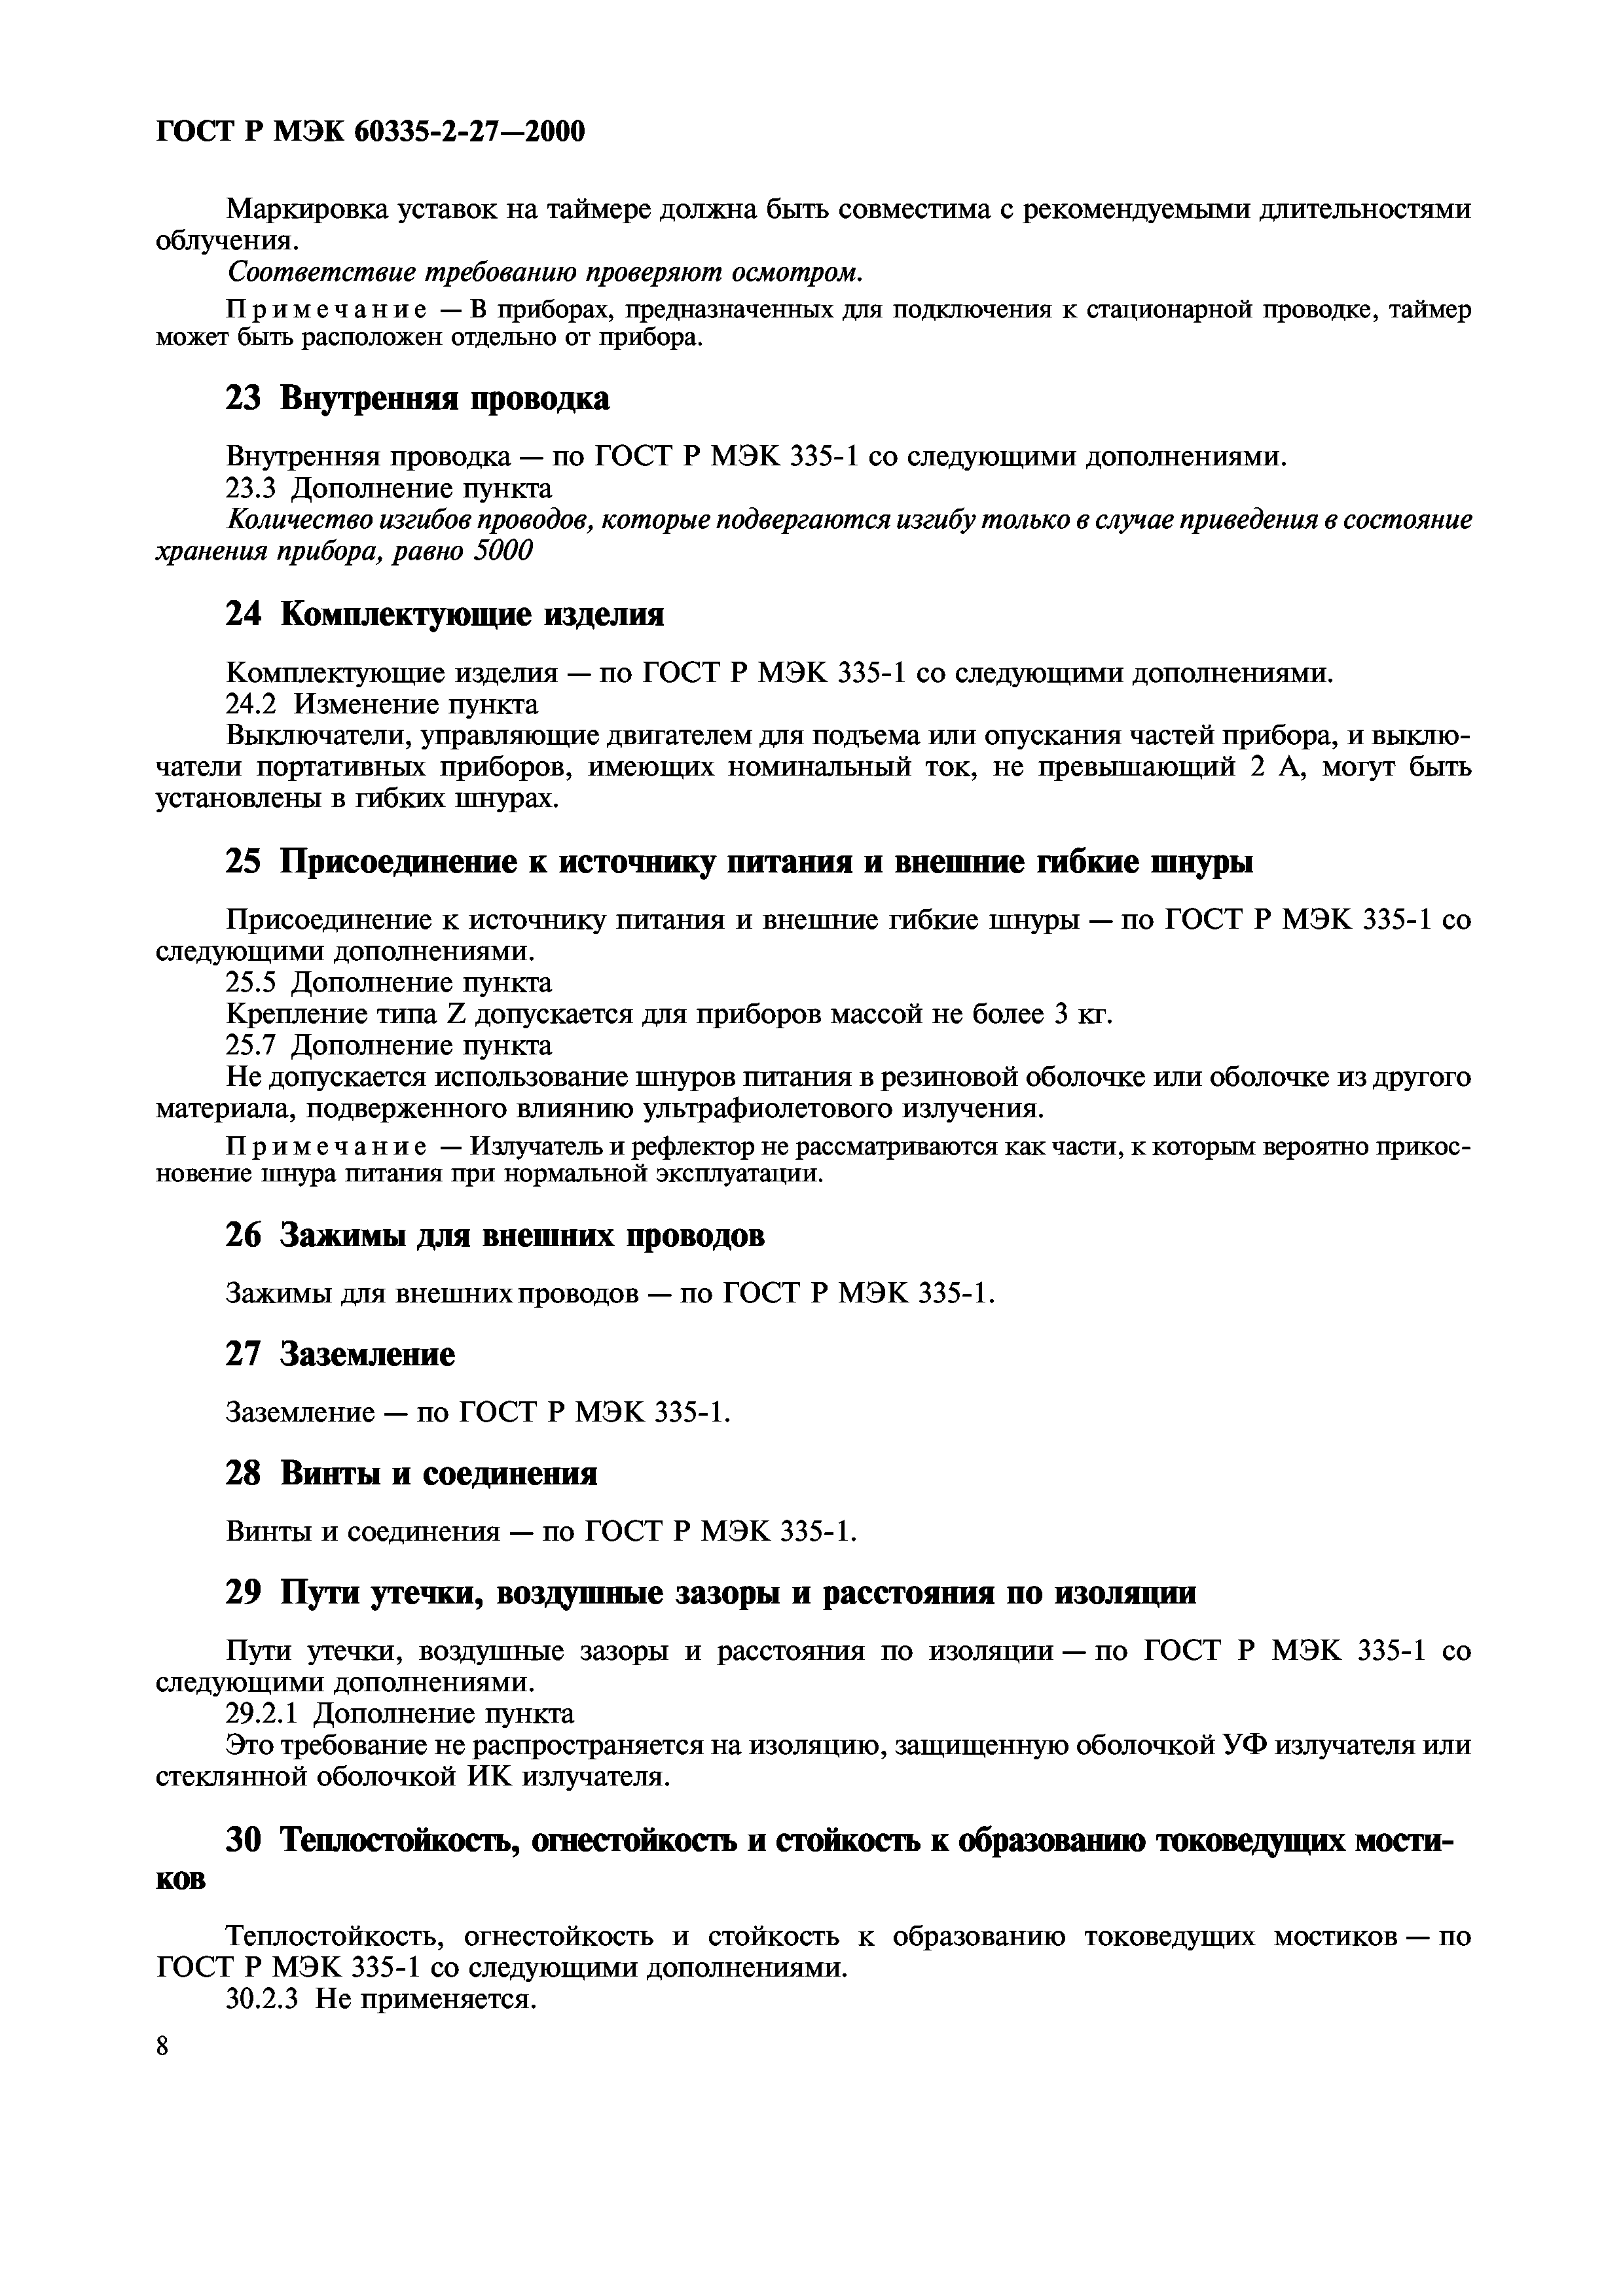 ГОСТ Р МЭК 60335-2-27-2000